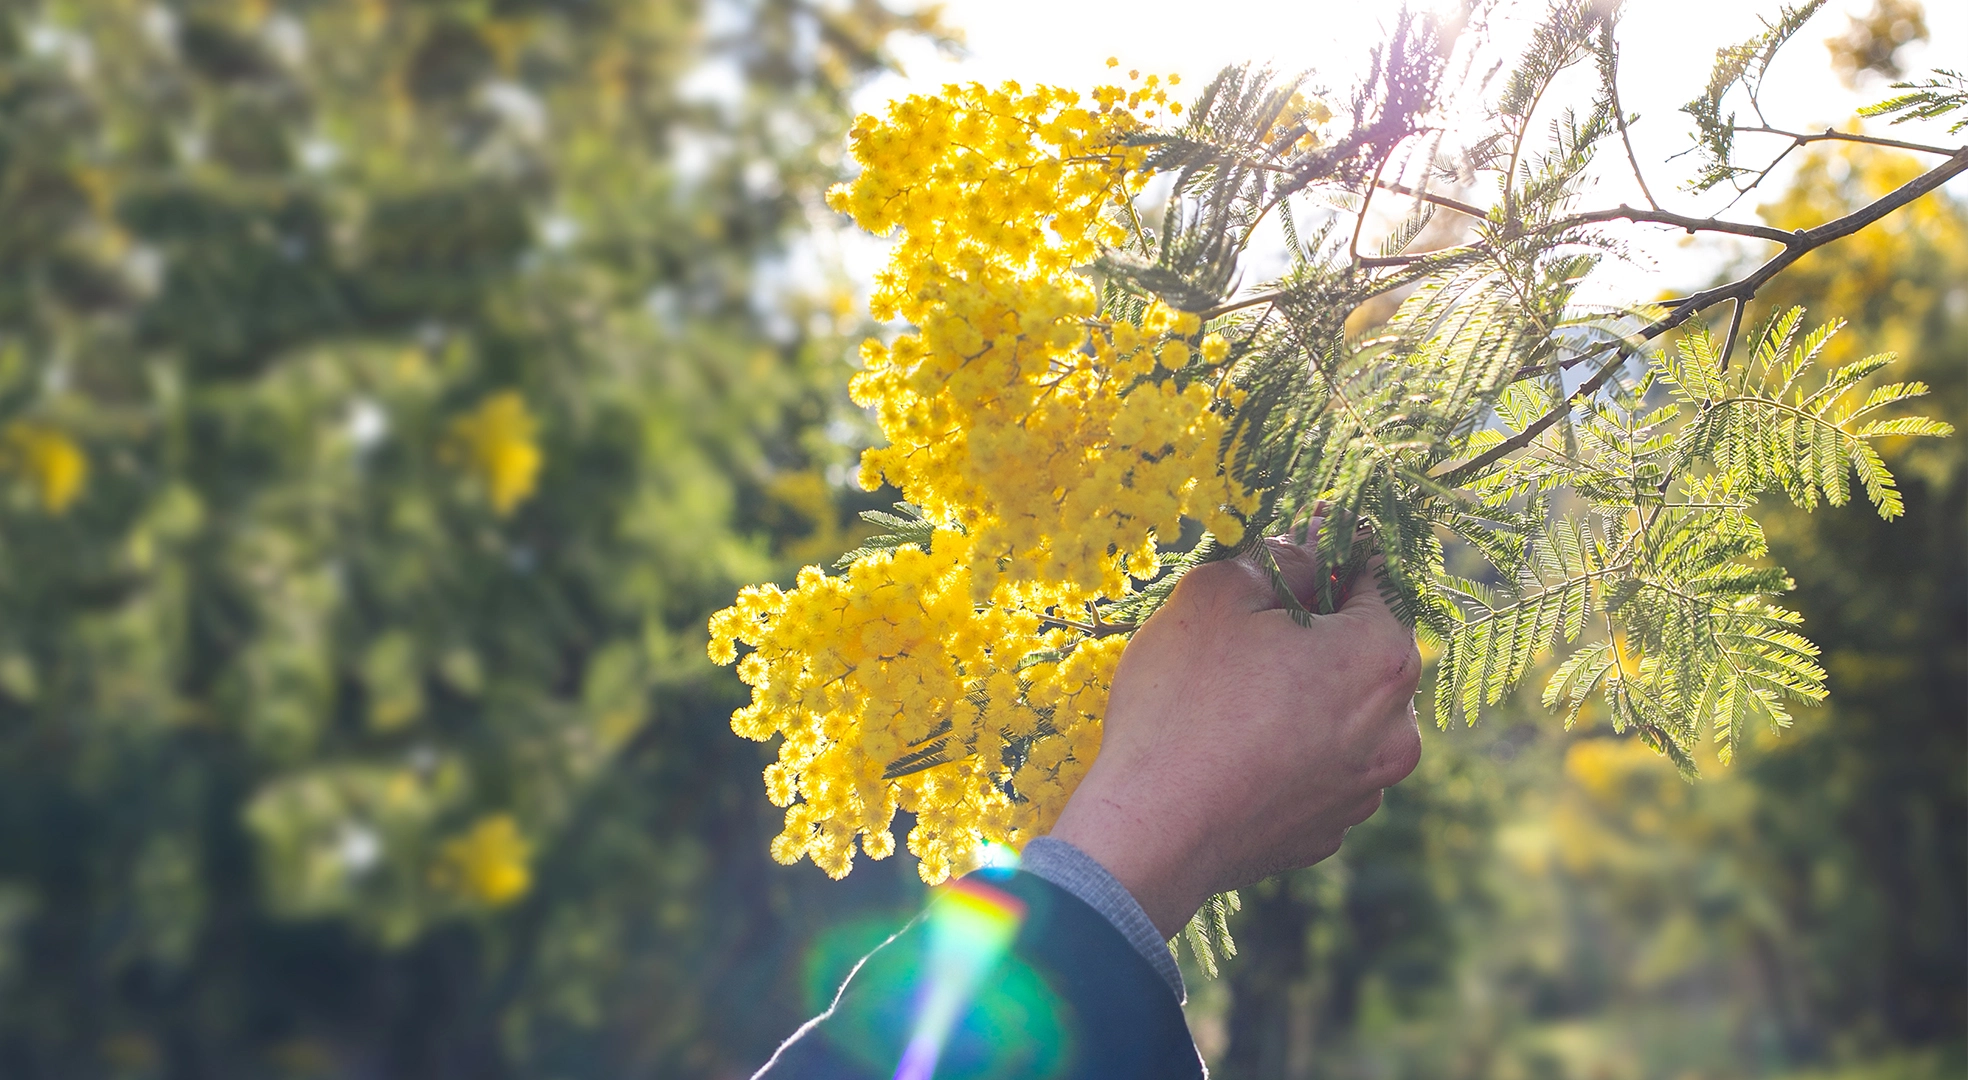 La tarte mimosa tire son nom de la fleur éponyme, connue pour sa couleur jaune lumineuse et son parfum délicat